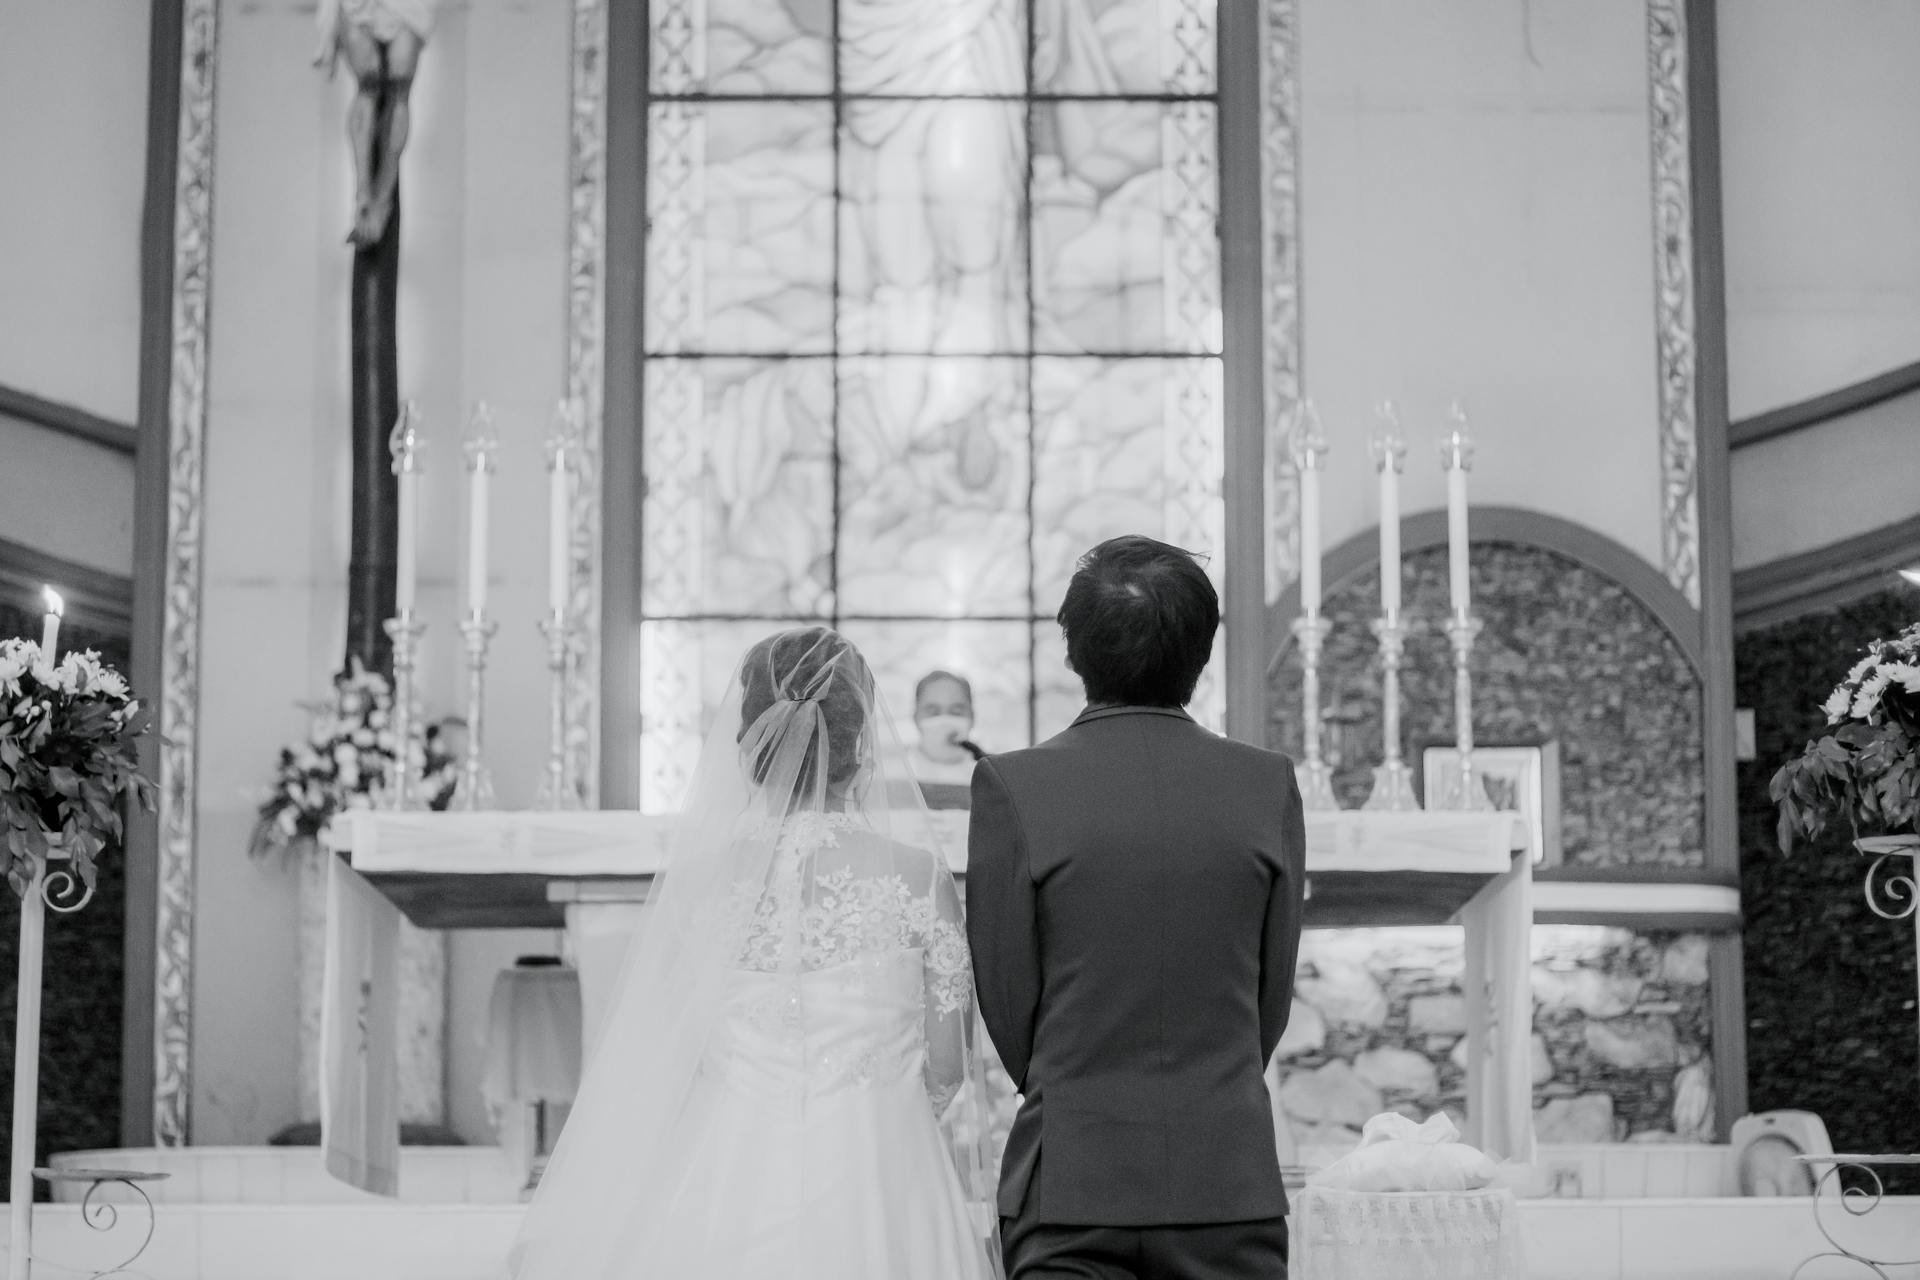 Ein Paar vor dem Altar | Quelle: Pexels